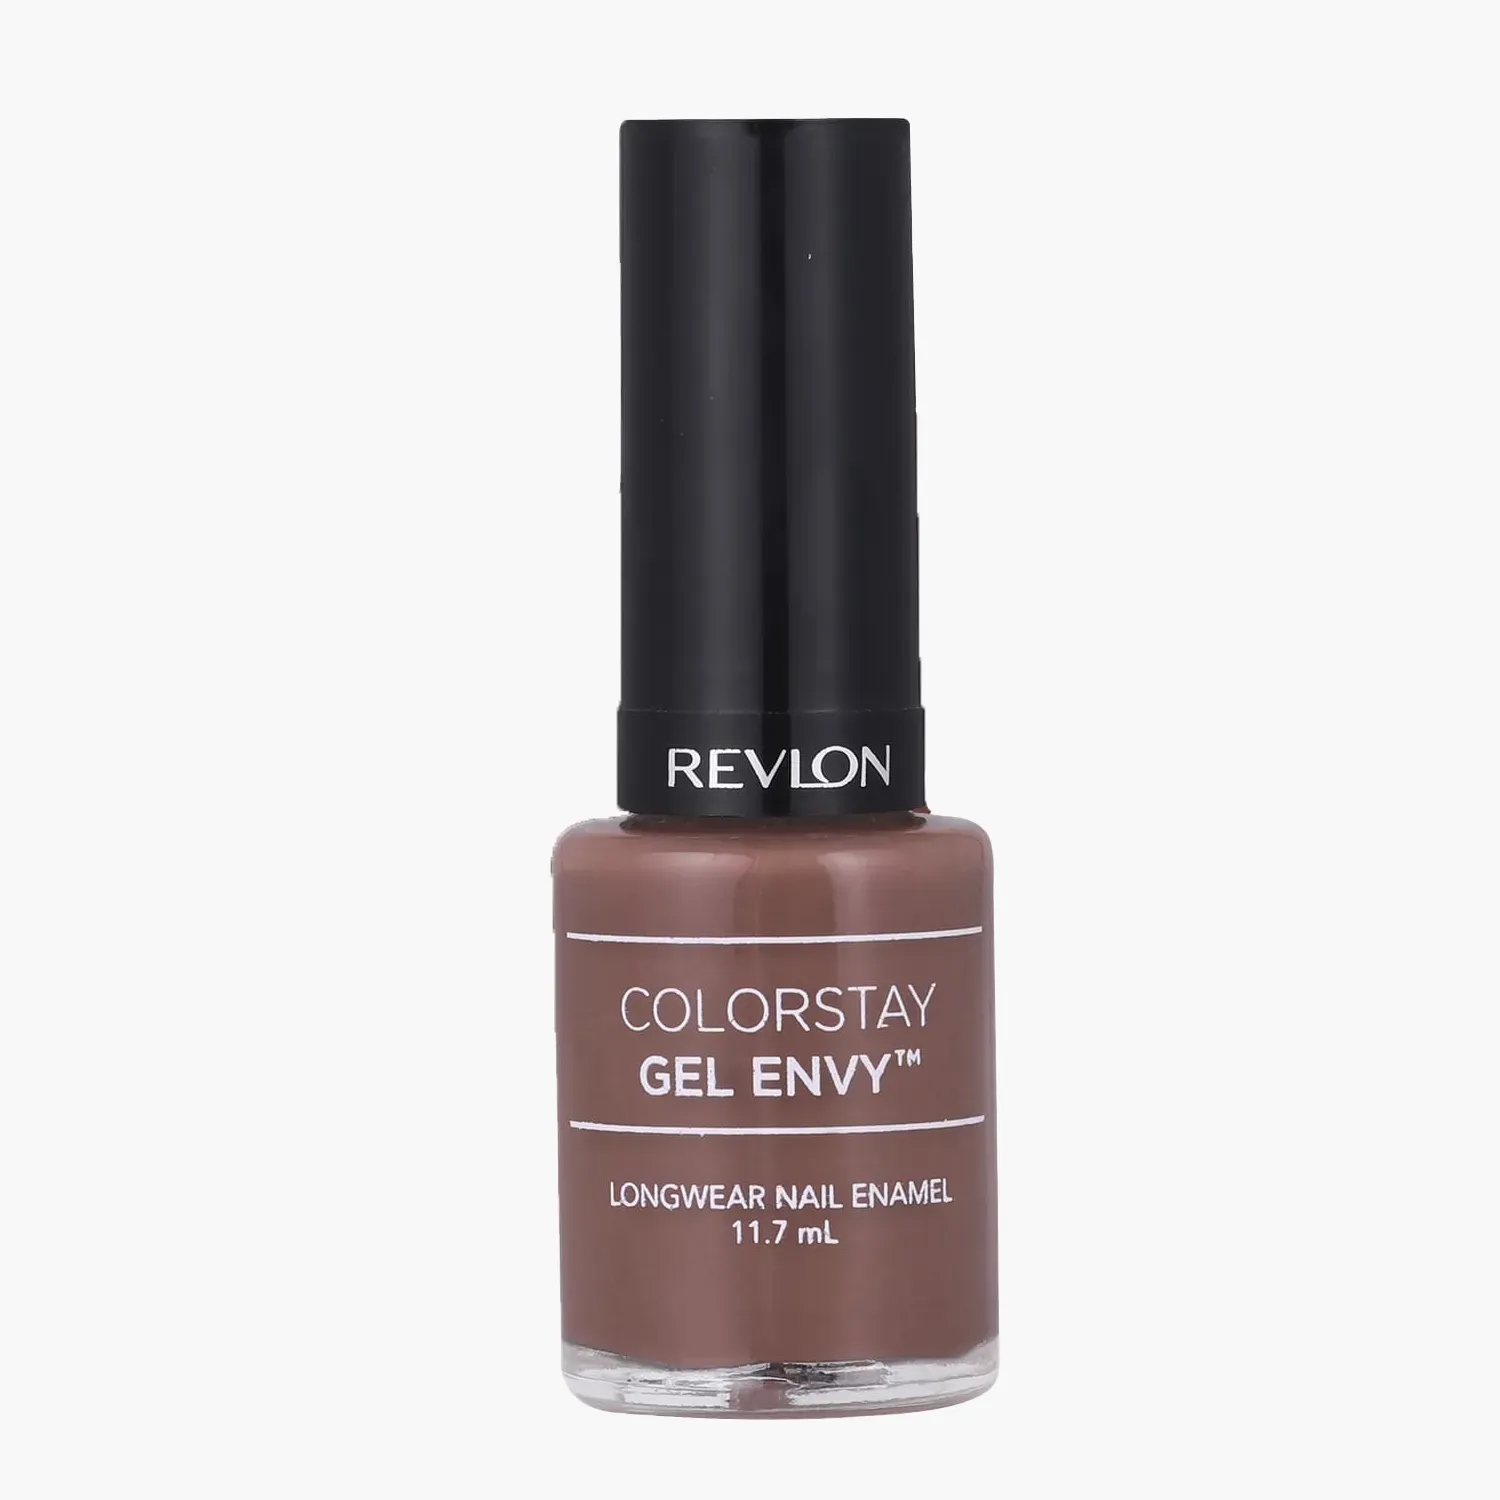 Revlon Gel Envy nail polish | OrdinaryMisfit